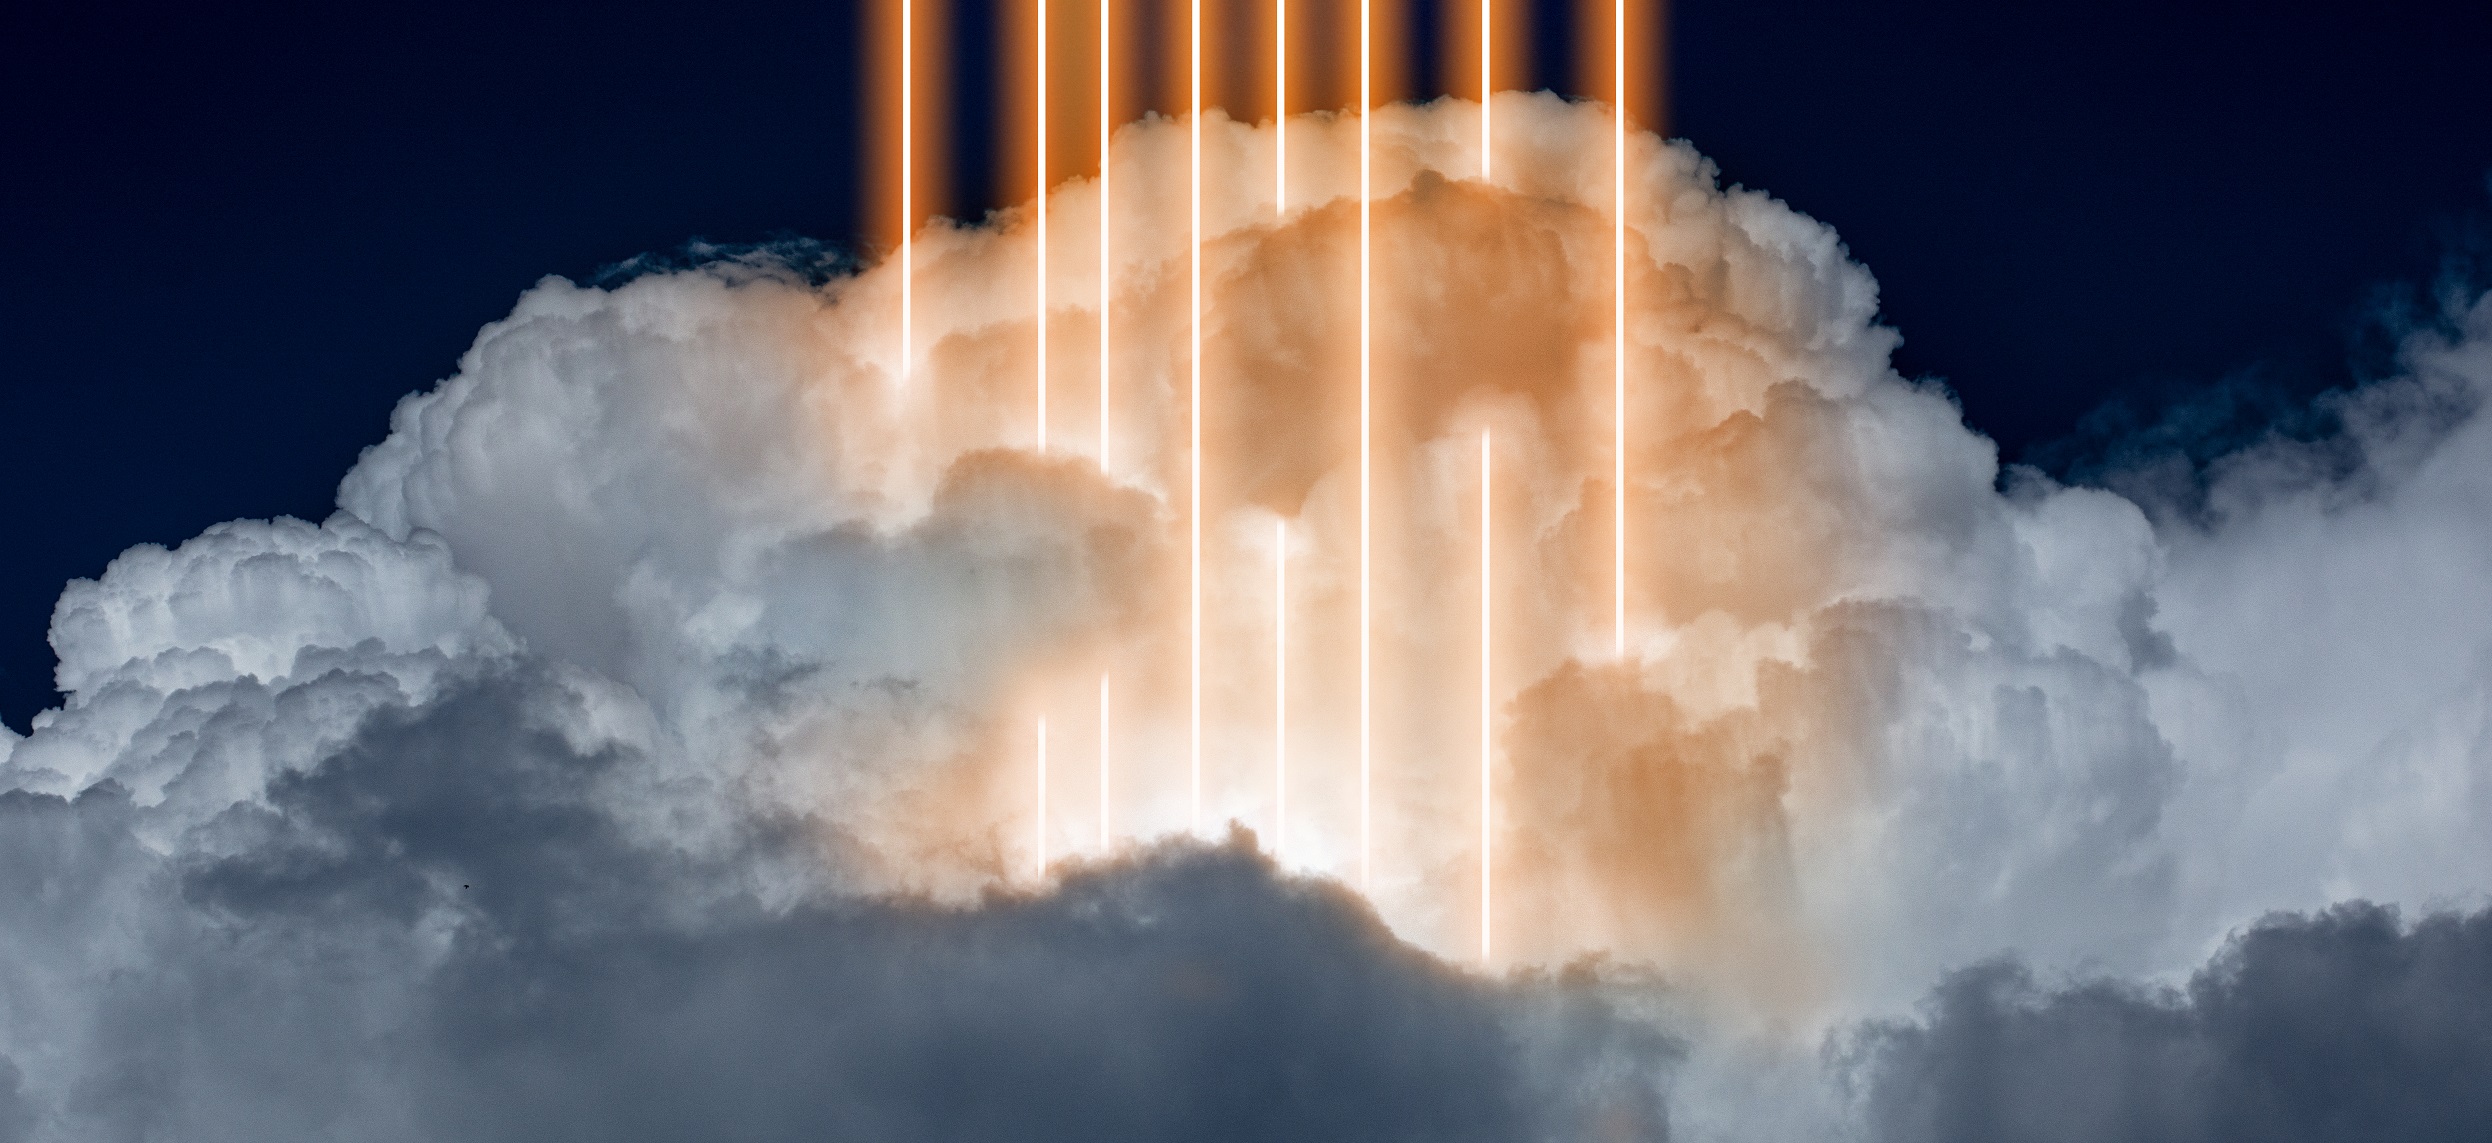 Les flashs de couronne sont des phénomènes lumineux très rares qui se produisent au sommet des nuages d'orages. © master1305, Adobe Stock